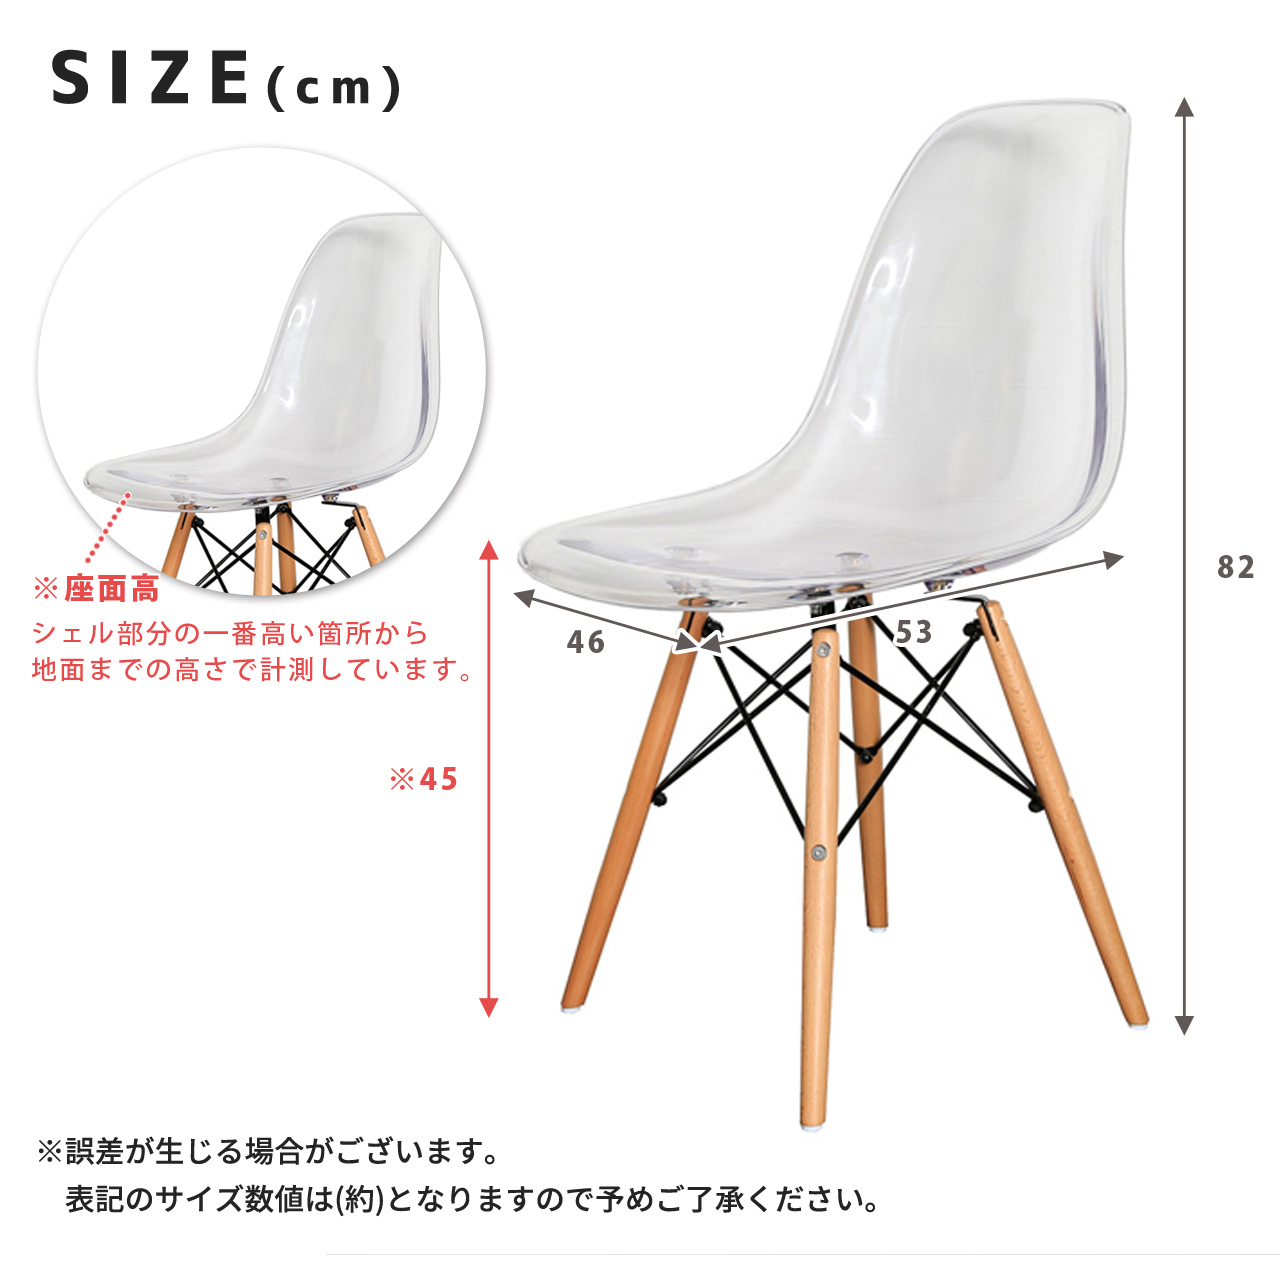 イームズシェルチェア Eames Shell Chair GSC リプロダクト デザイン 